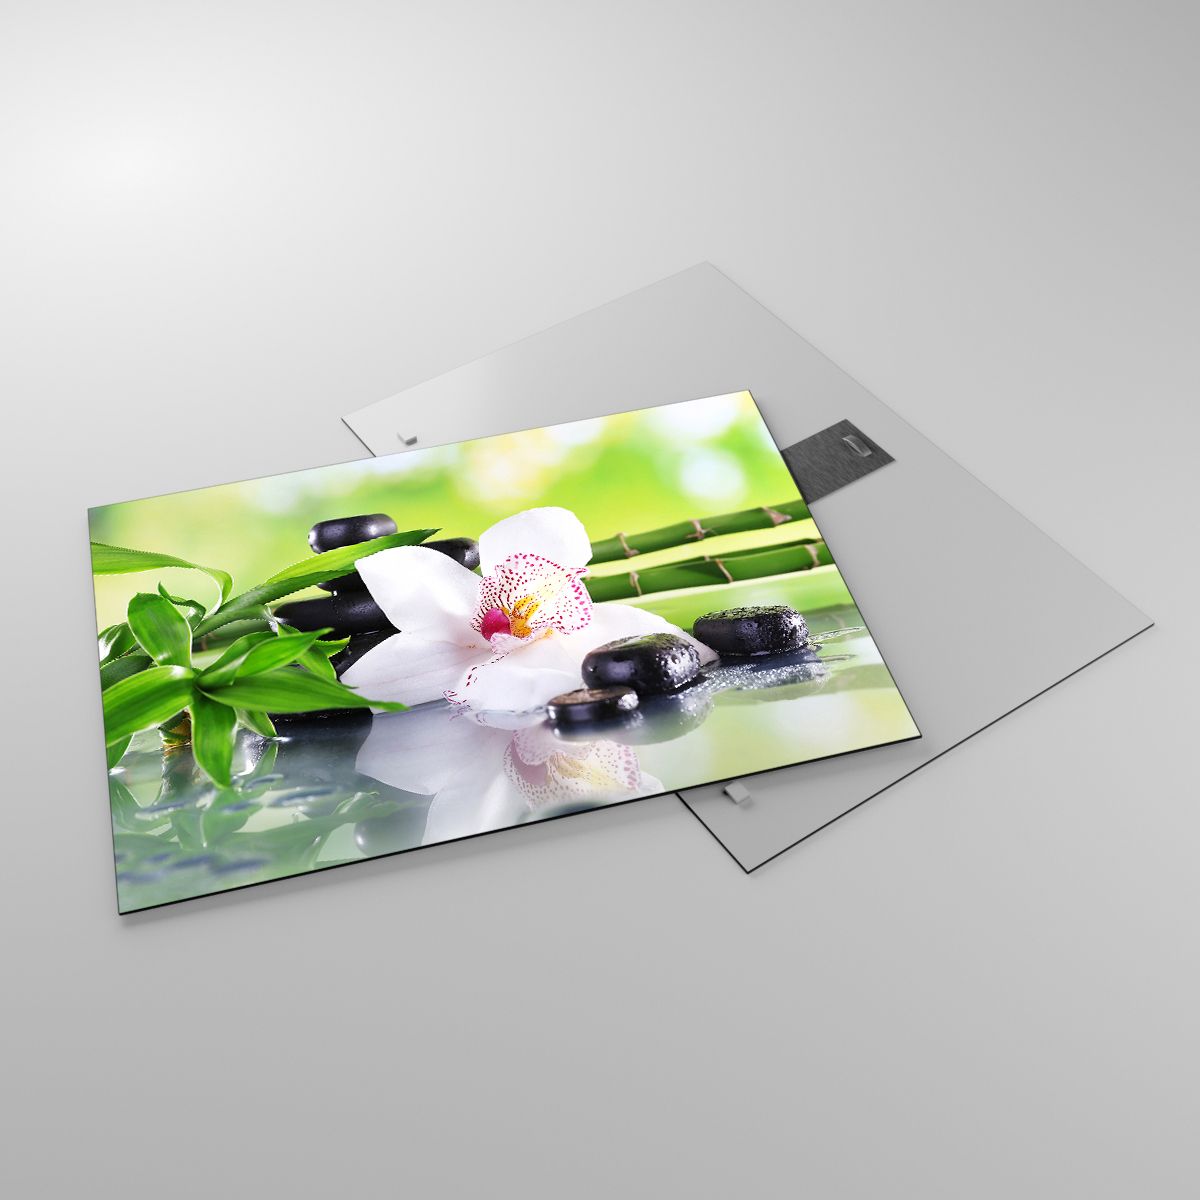 Glasbild Bambus, Glasbild Blume, Glasbild Orchidee, Glasbild Spa, Glasbild Asien